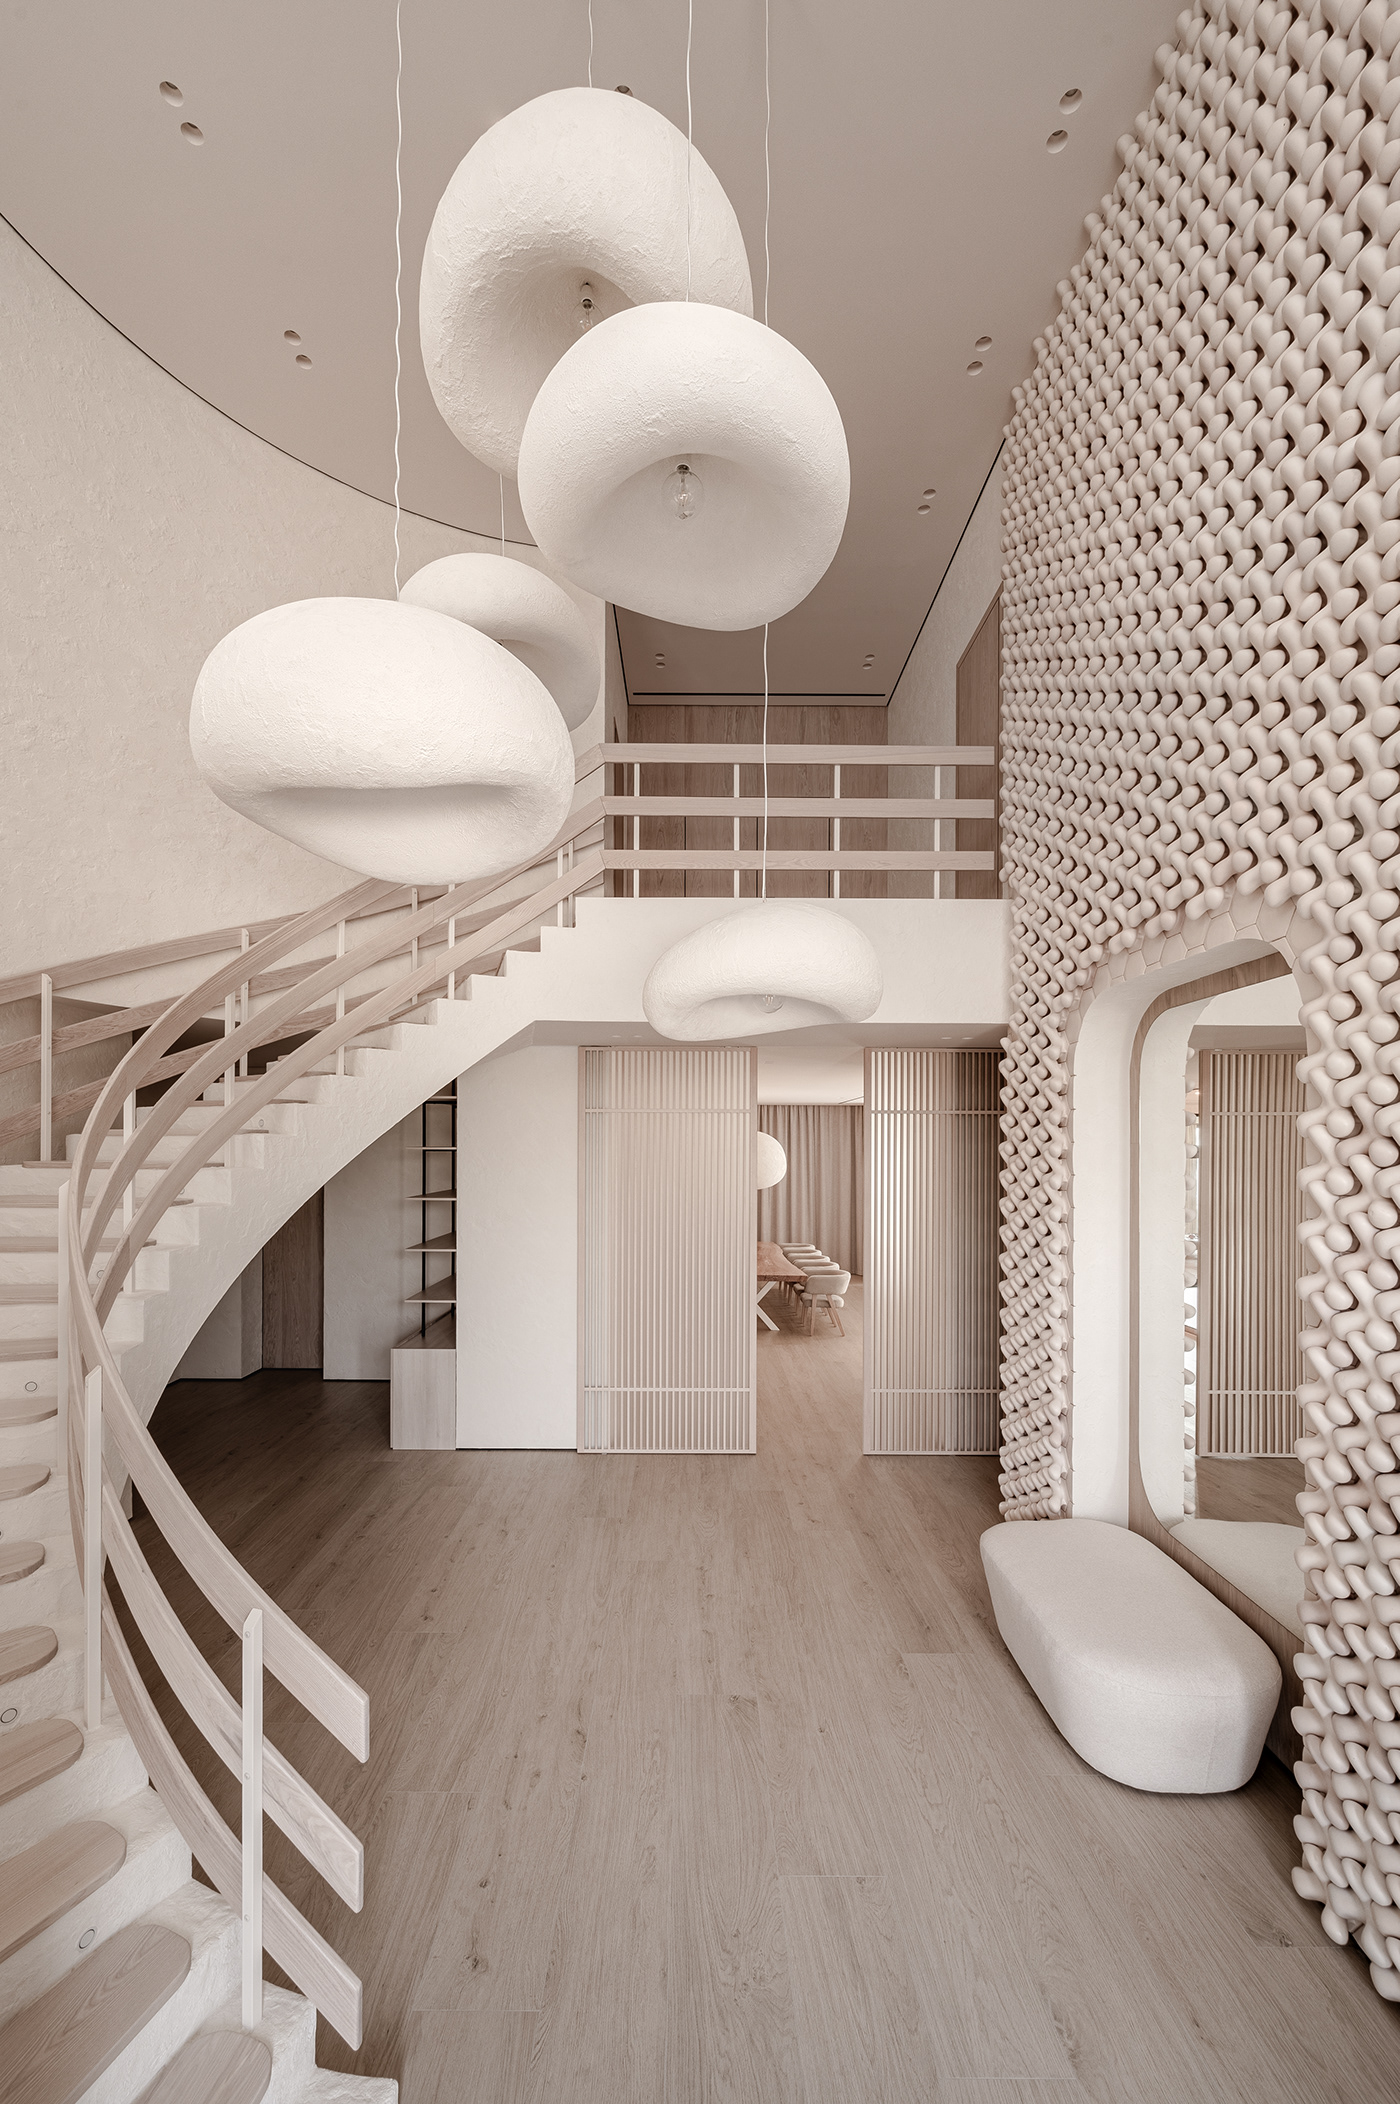 architecture design designer Interior interior design  makhno modern post Render ukraine